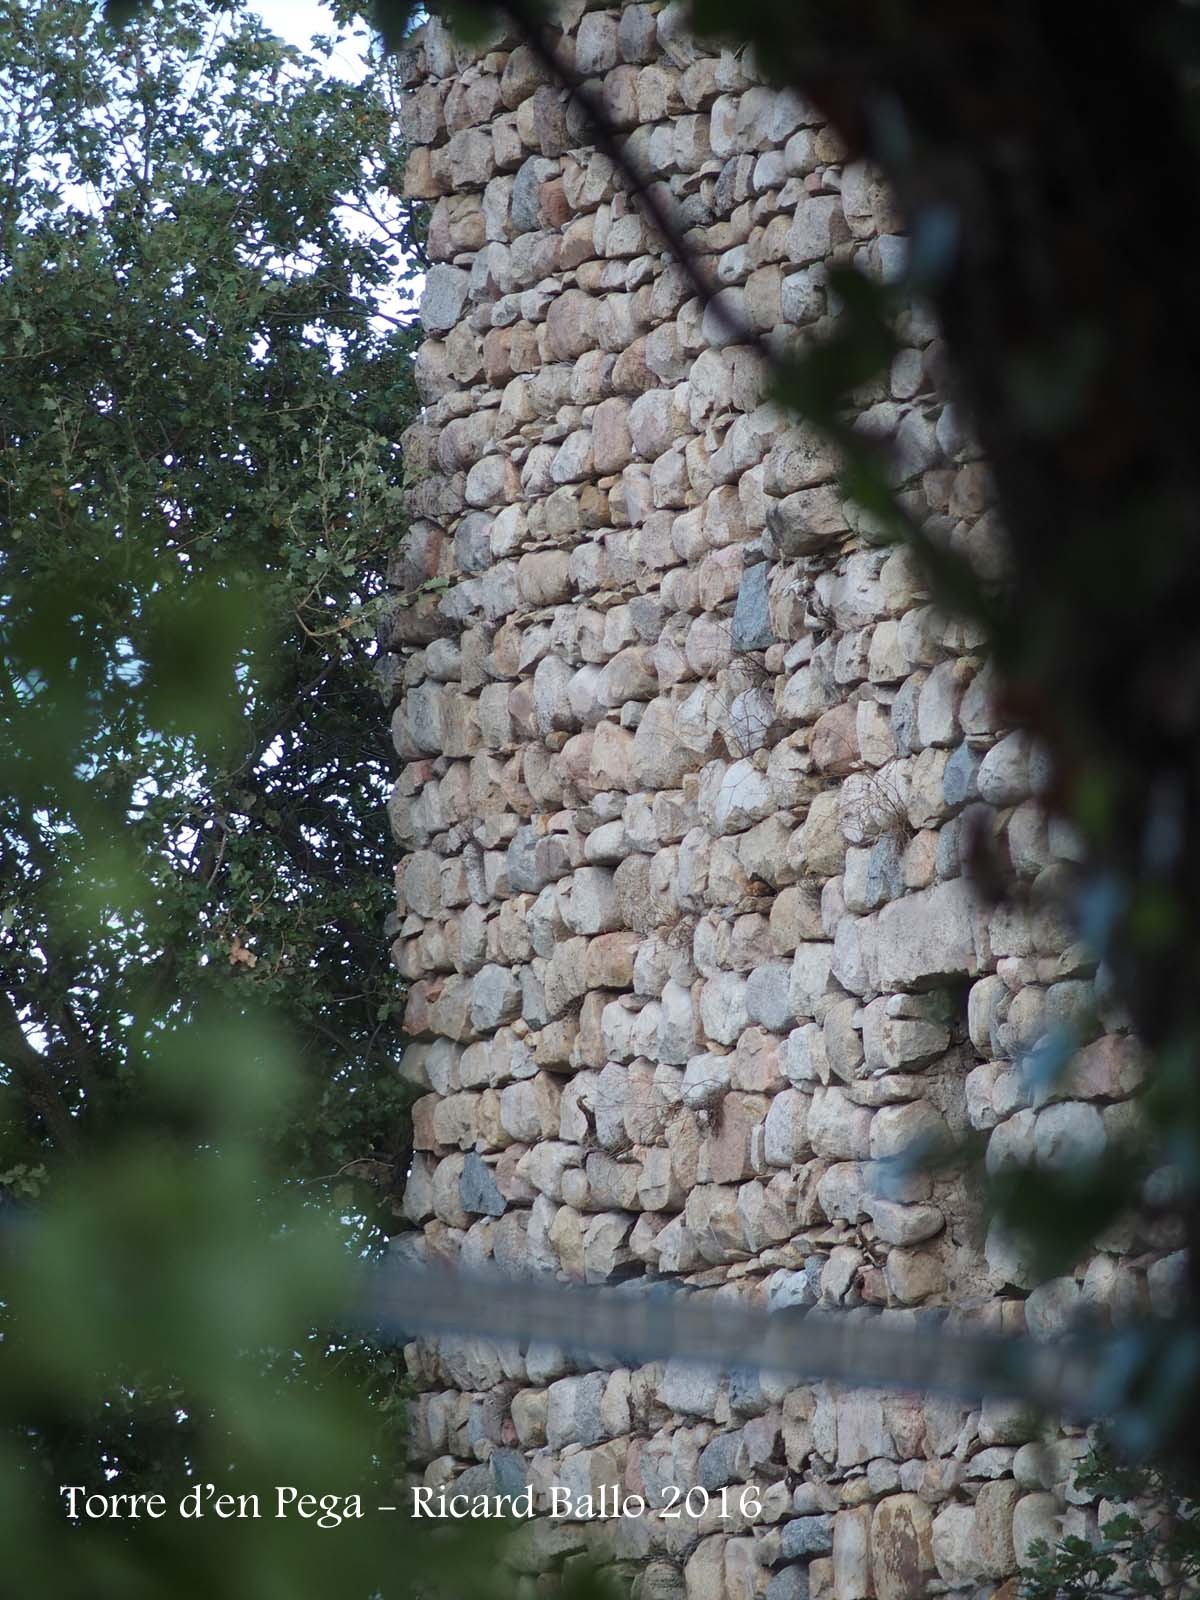 Torre d’en Pega – Riells i Viabrea - Fotografia obtinguda passant l'objectiu de la màquina de fotografiar entre mig del filat de la porta d'entrada a la finca